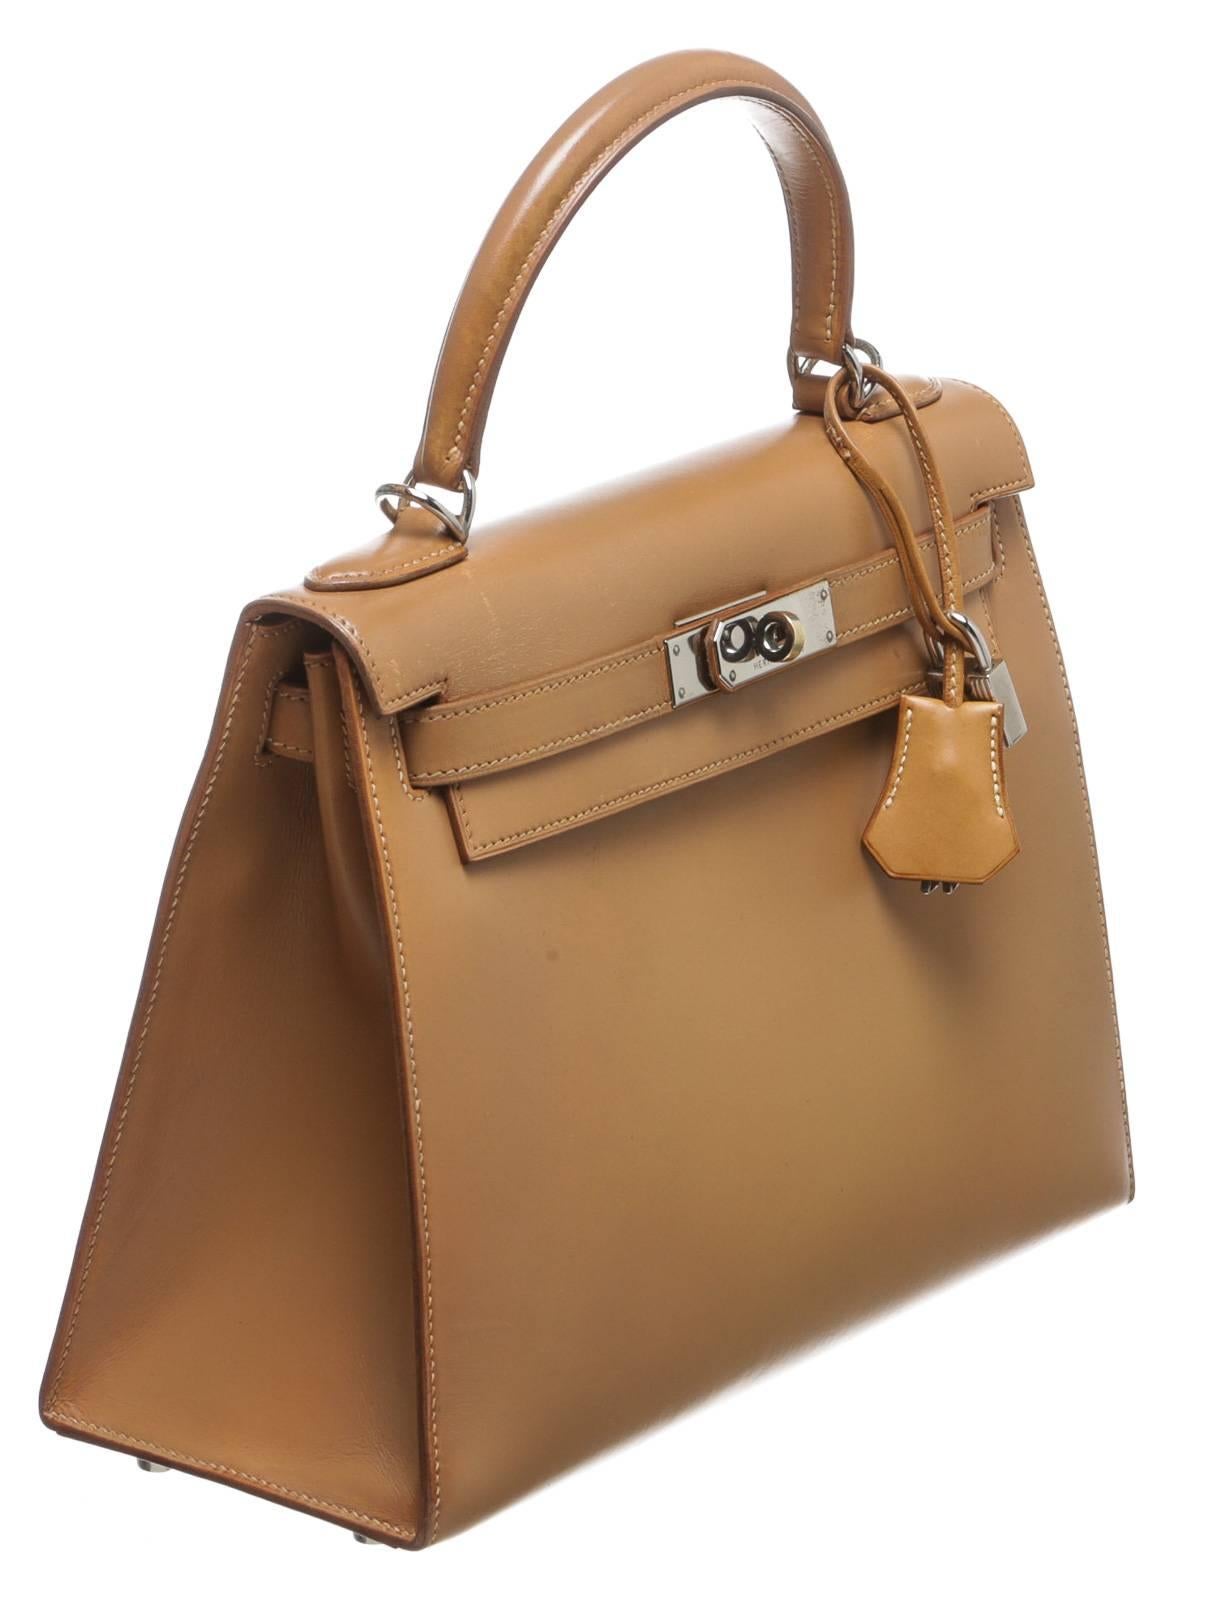 Hermes Natural Leather 32cm Kelly Handbag SHW For Sale 2